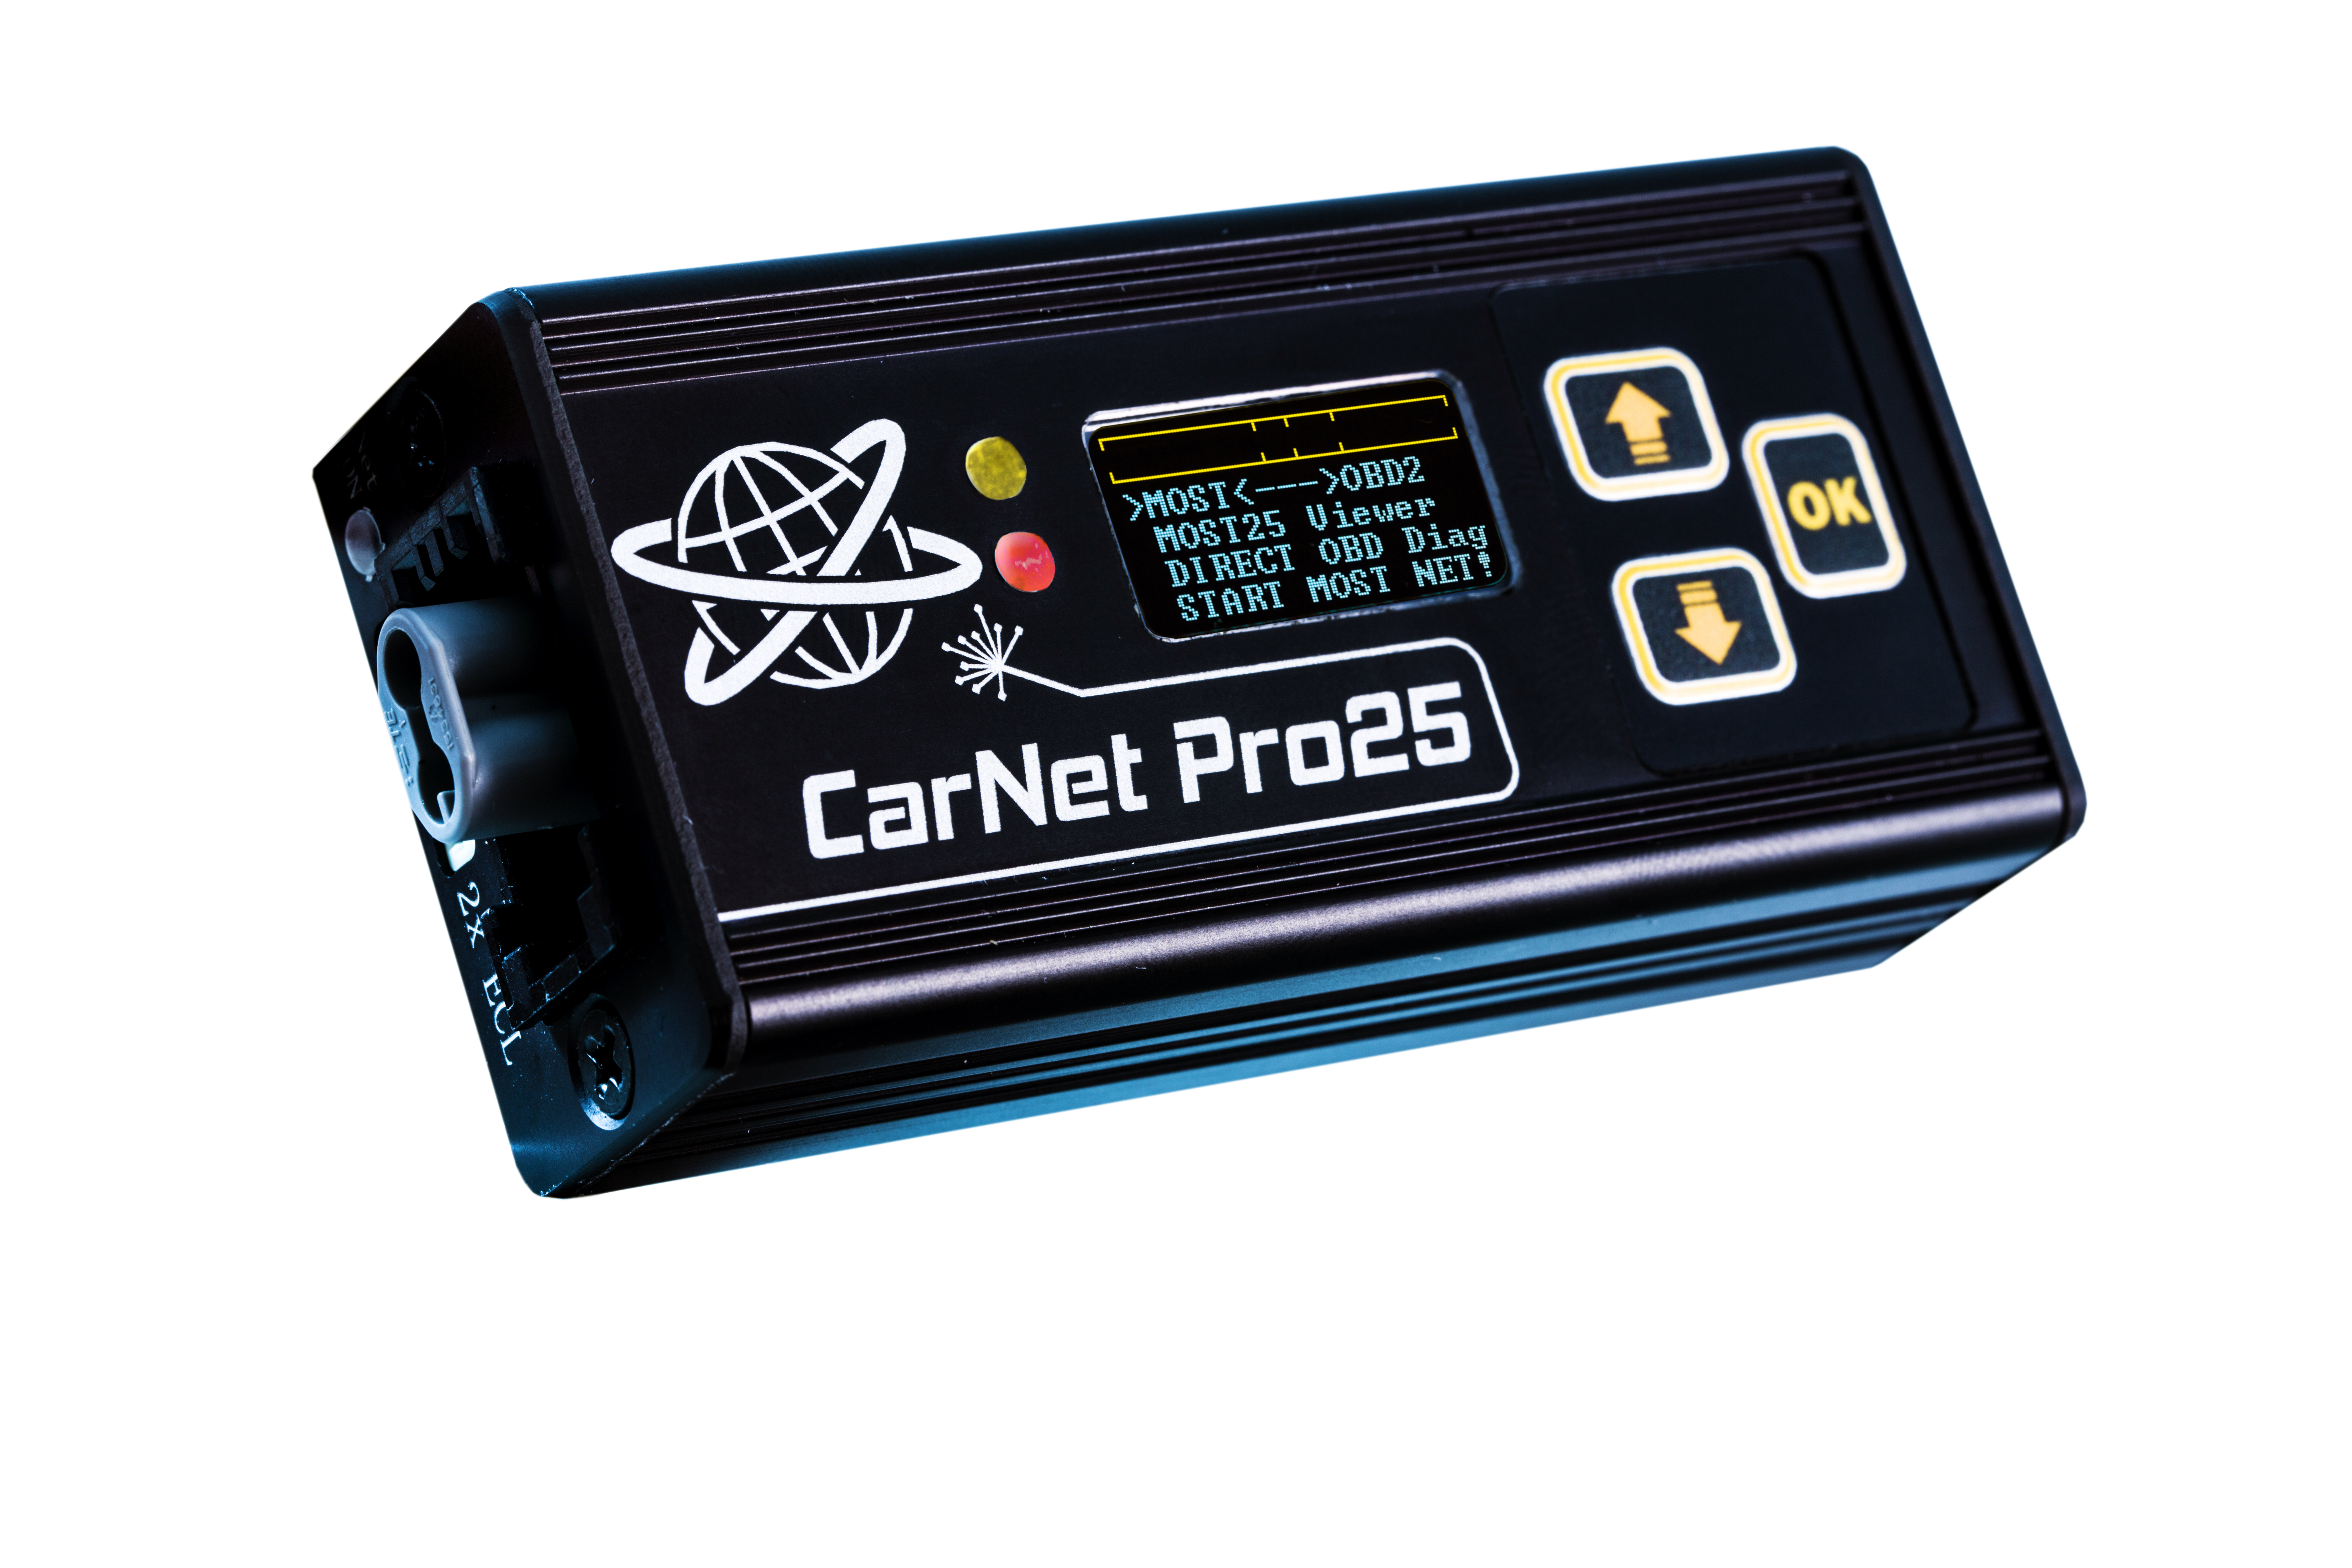 Carnet Pro25 Nie Ma Żadnych Konkurentów 100% Wyjątkowy Projekt Unikalne I Profesjonalne Urządzenie Oparte Na Technologii MOST Do Diagnostyki Samochodowej I Przeprogramowania Modułów Elektronicznych.